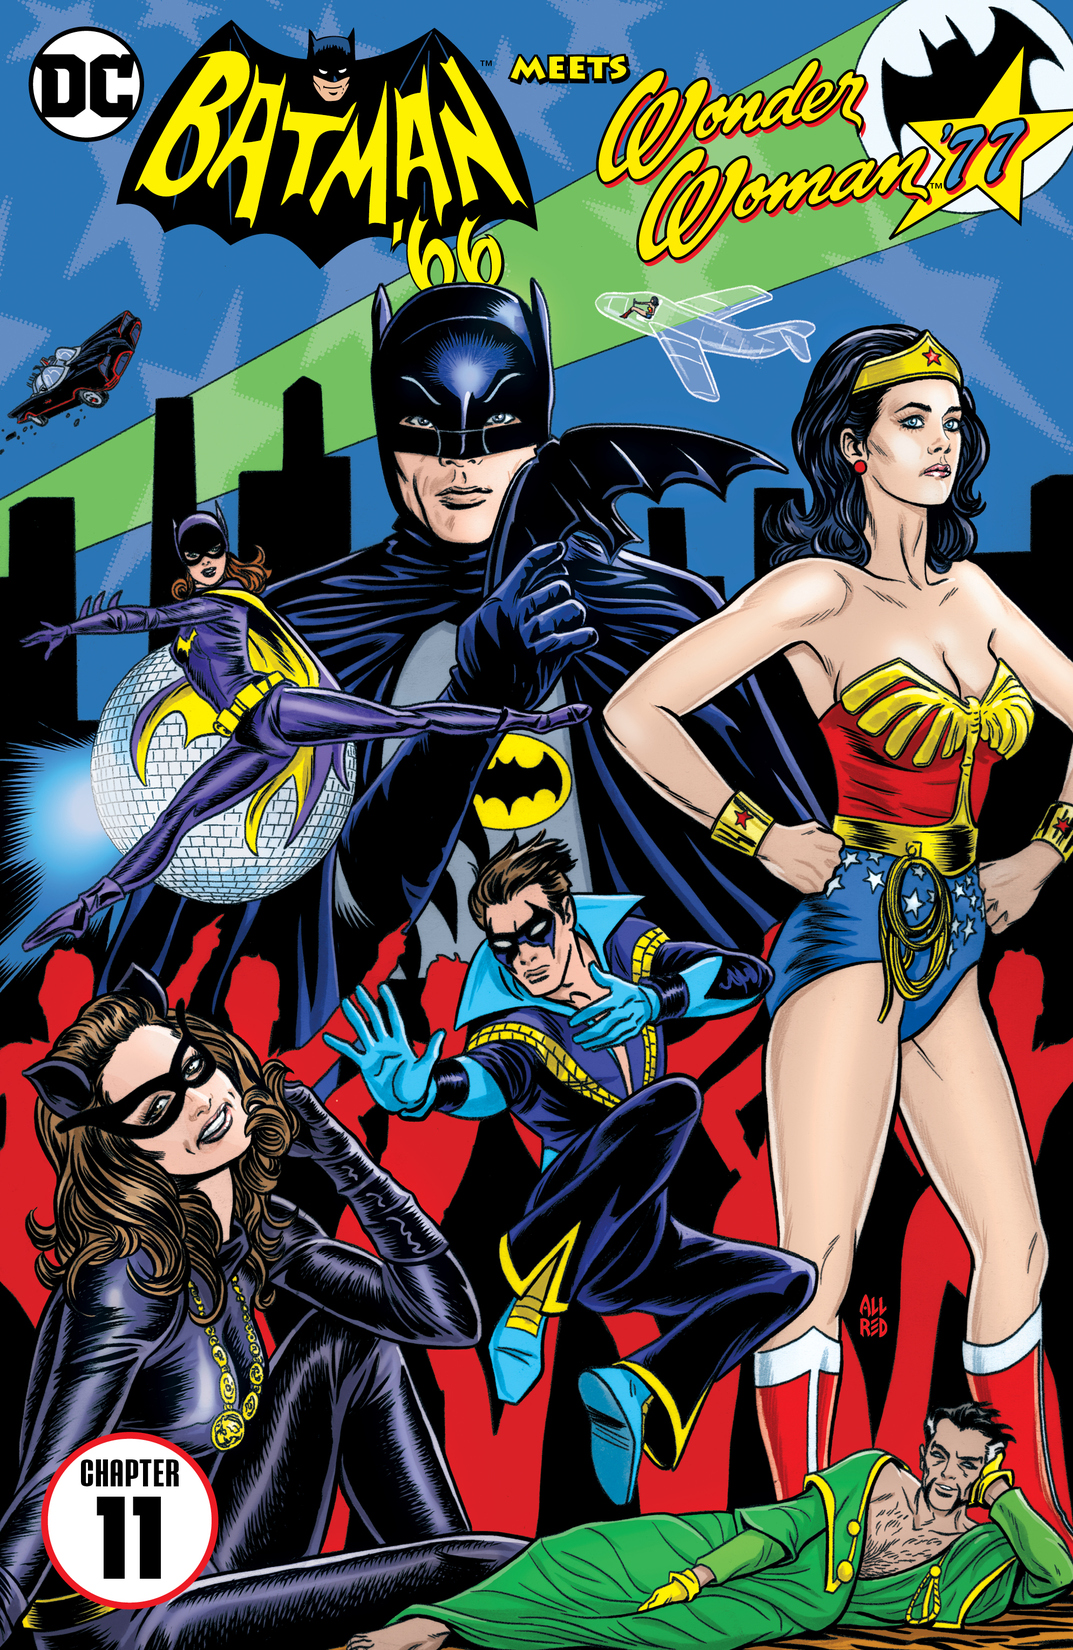 Batman '66 Meets Wonder Woman '77 #11 preview images